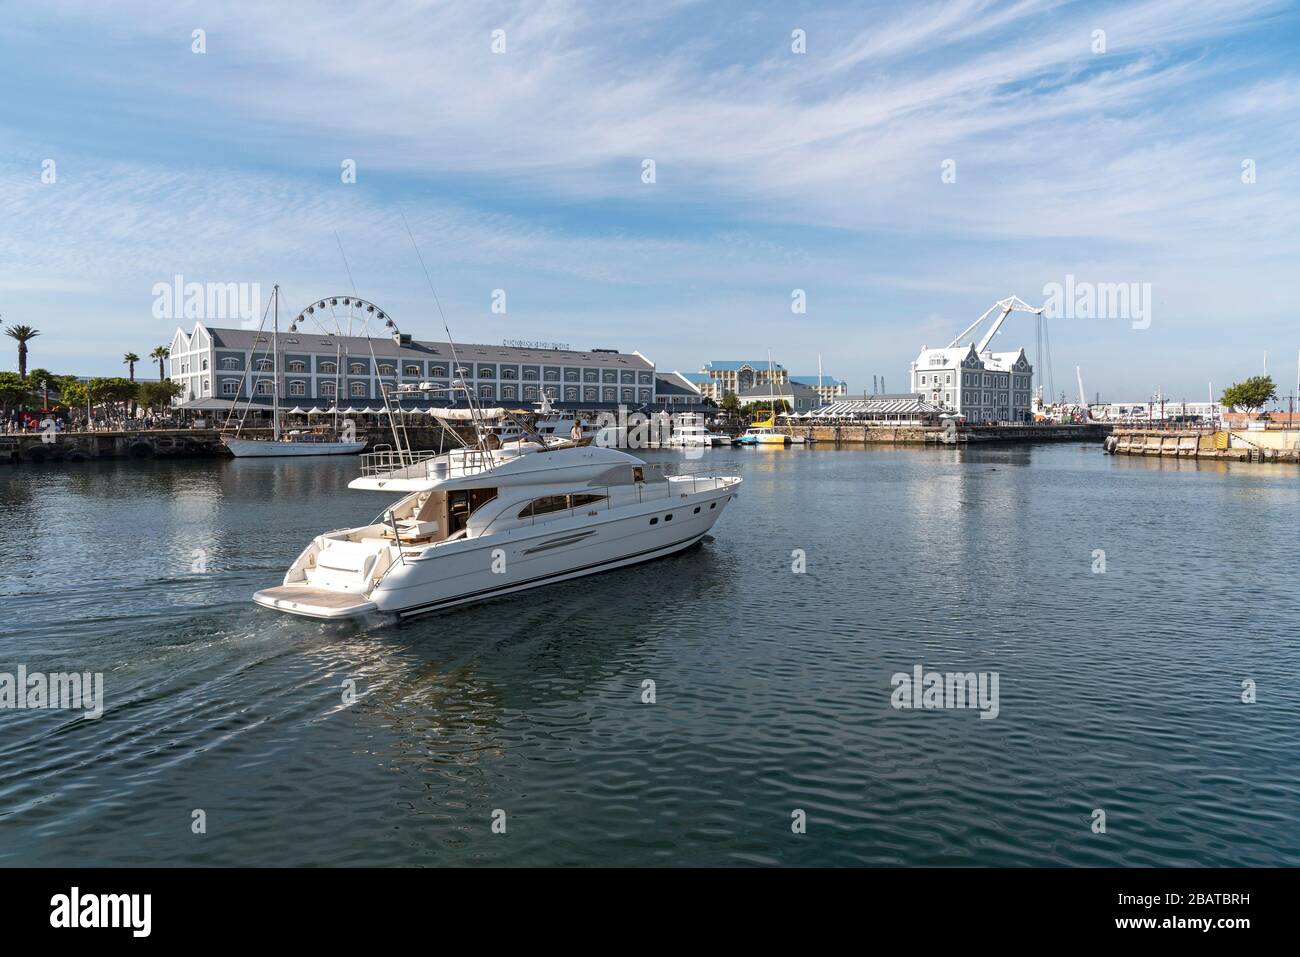 Città del Capo, Sudafrica, dicembre 2019. Yacht di lusso che lascia il porto turistico nell'area del lungomare di Città del Capo. Sudafrica. Foto Stock